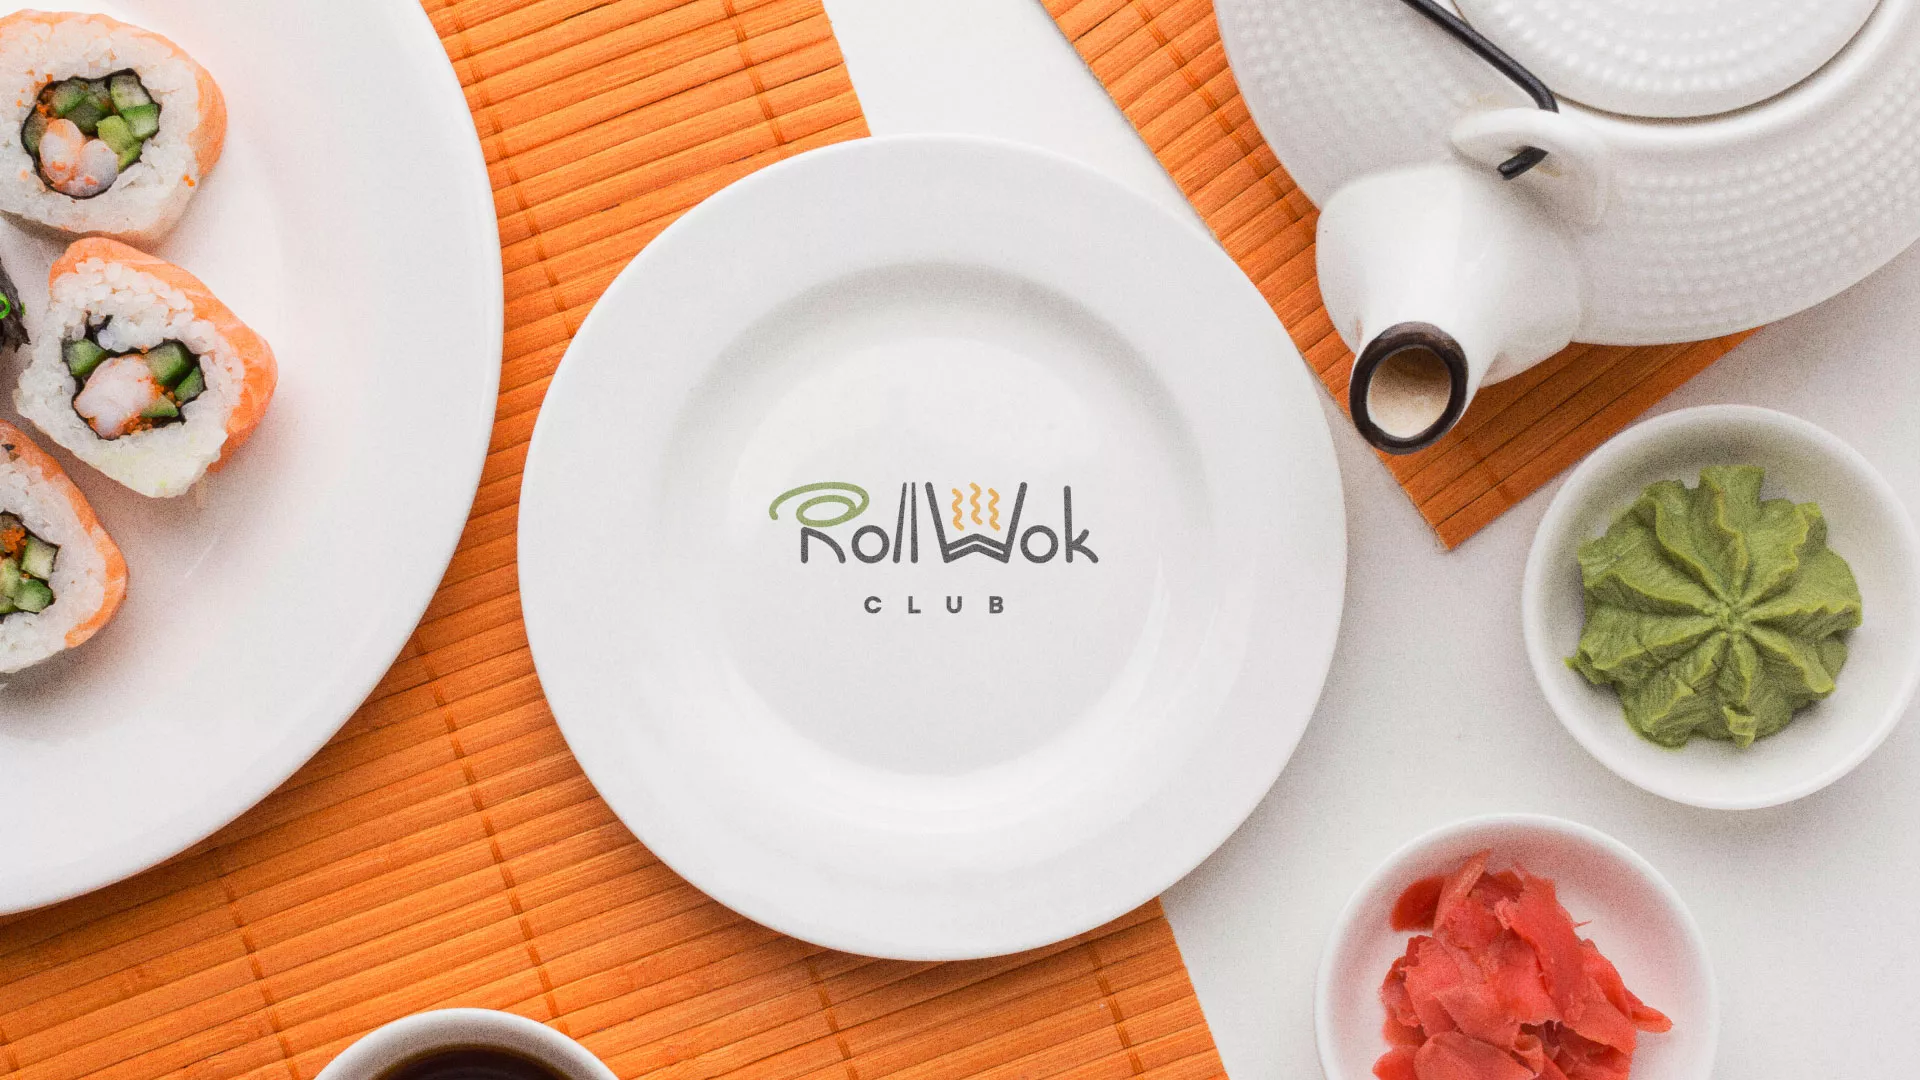 Разработка логотипа и фирменного стиля суши-бара «Roll Wok Club» в Лыткарино